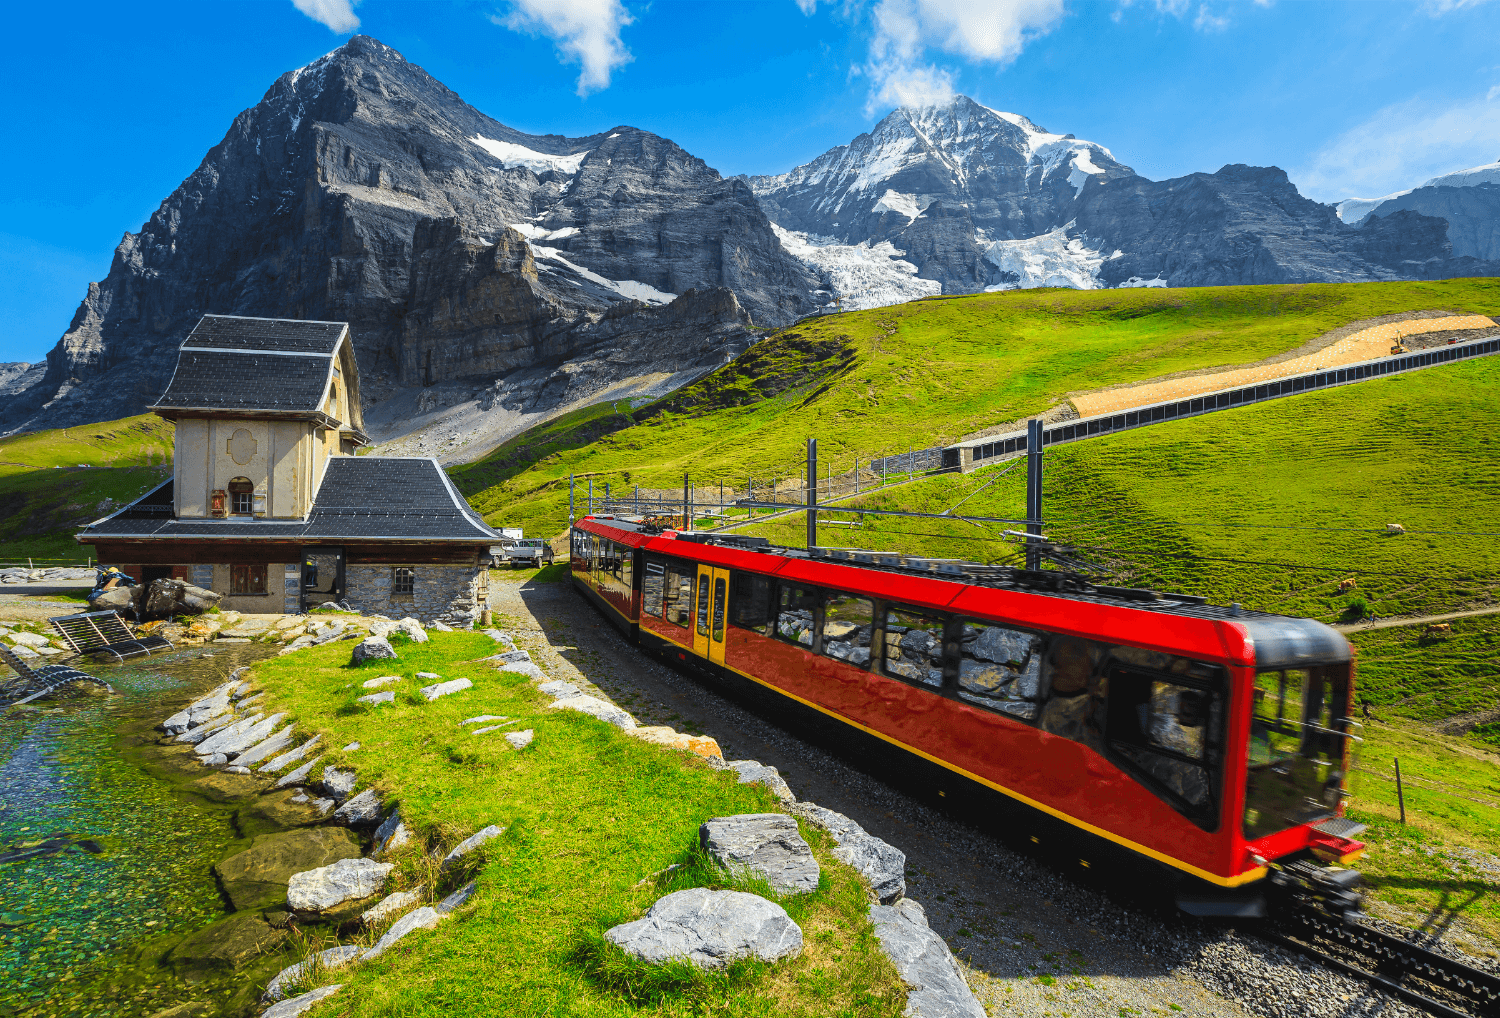 Mooiste-plekken-zwitserland-5-Jungfraujoch